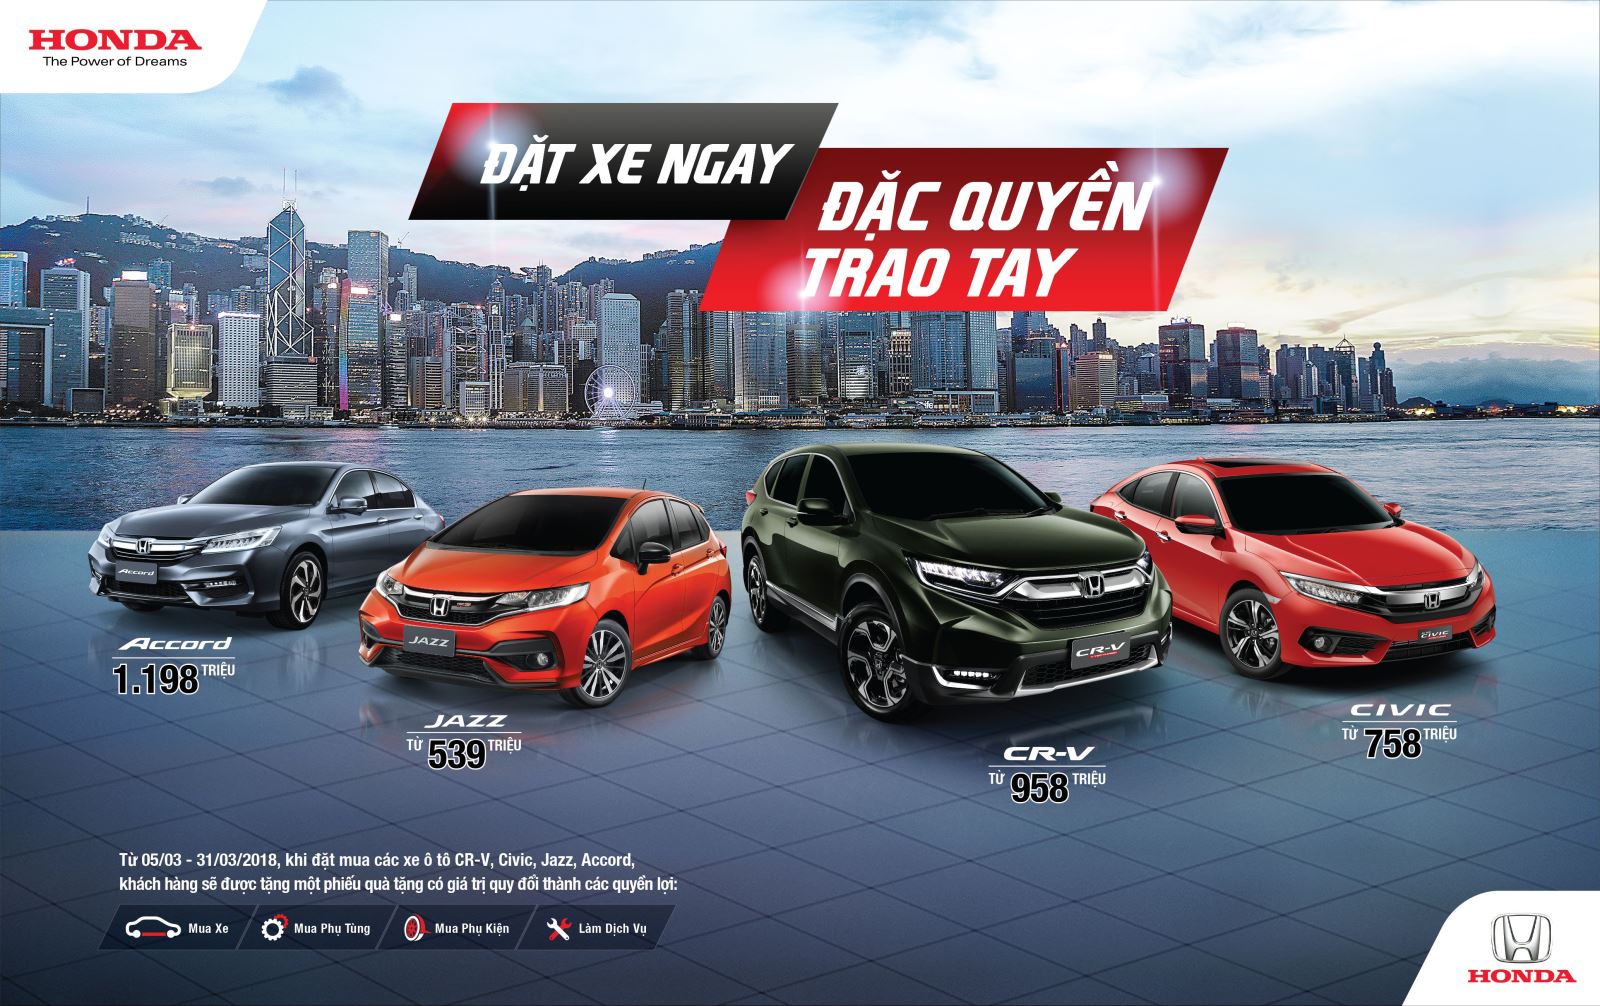 Honda Việt Nam công bố giá bán lẻ đề xuất các mẫu ôtô nhập khẩu nguyên chiếc từ Thái Lan 